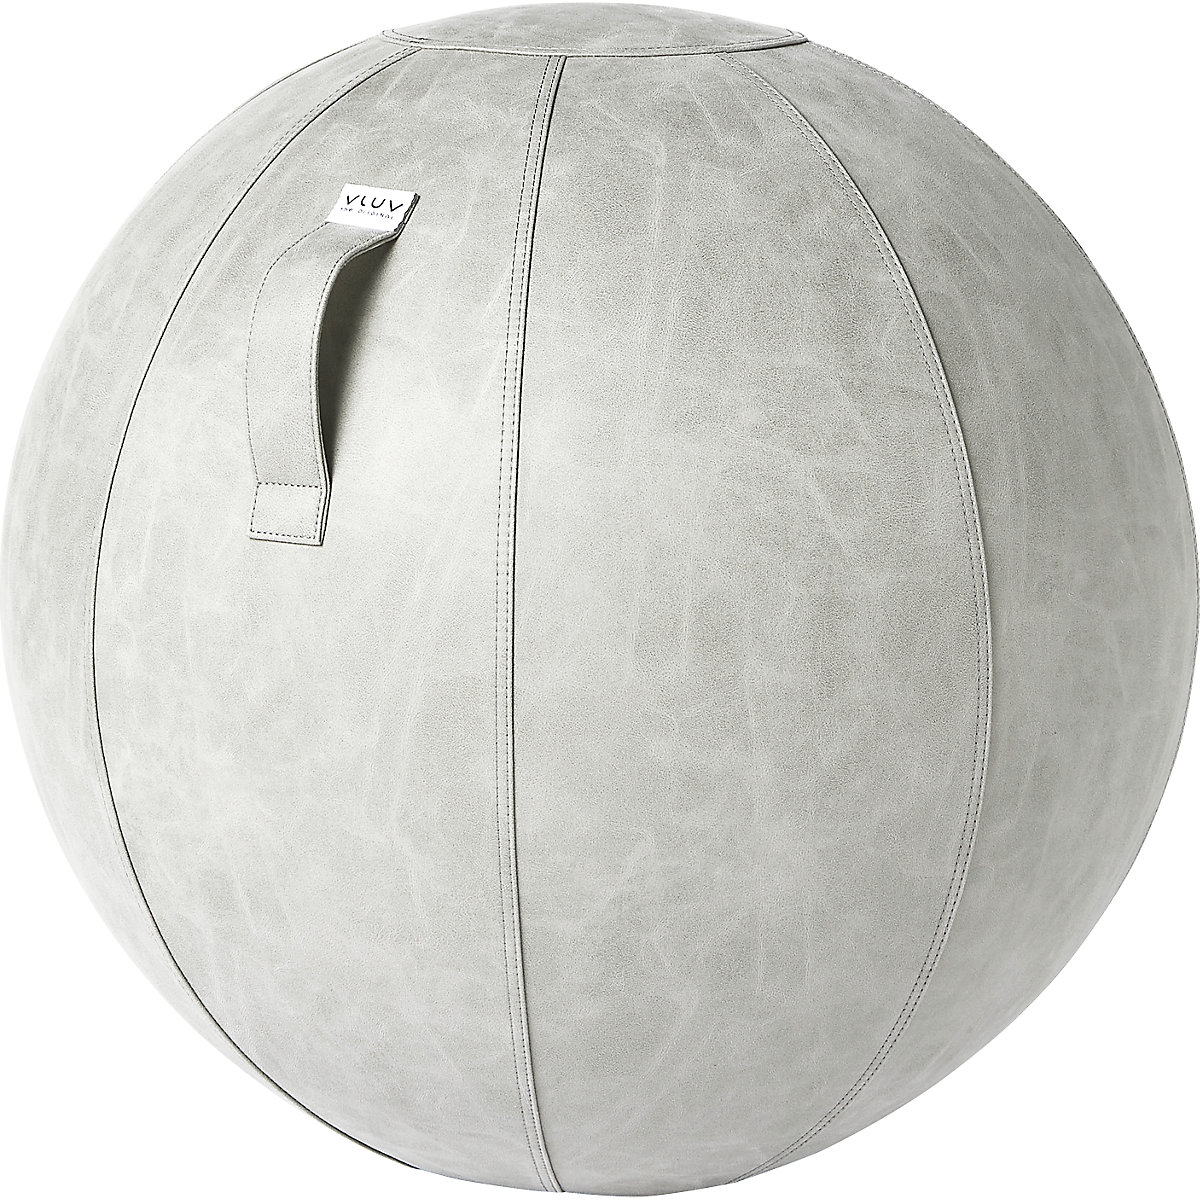 Fitball VEGA – VLUV, similpelle vegana, 700 – 750 mm, cemento-7